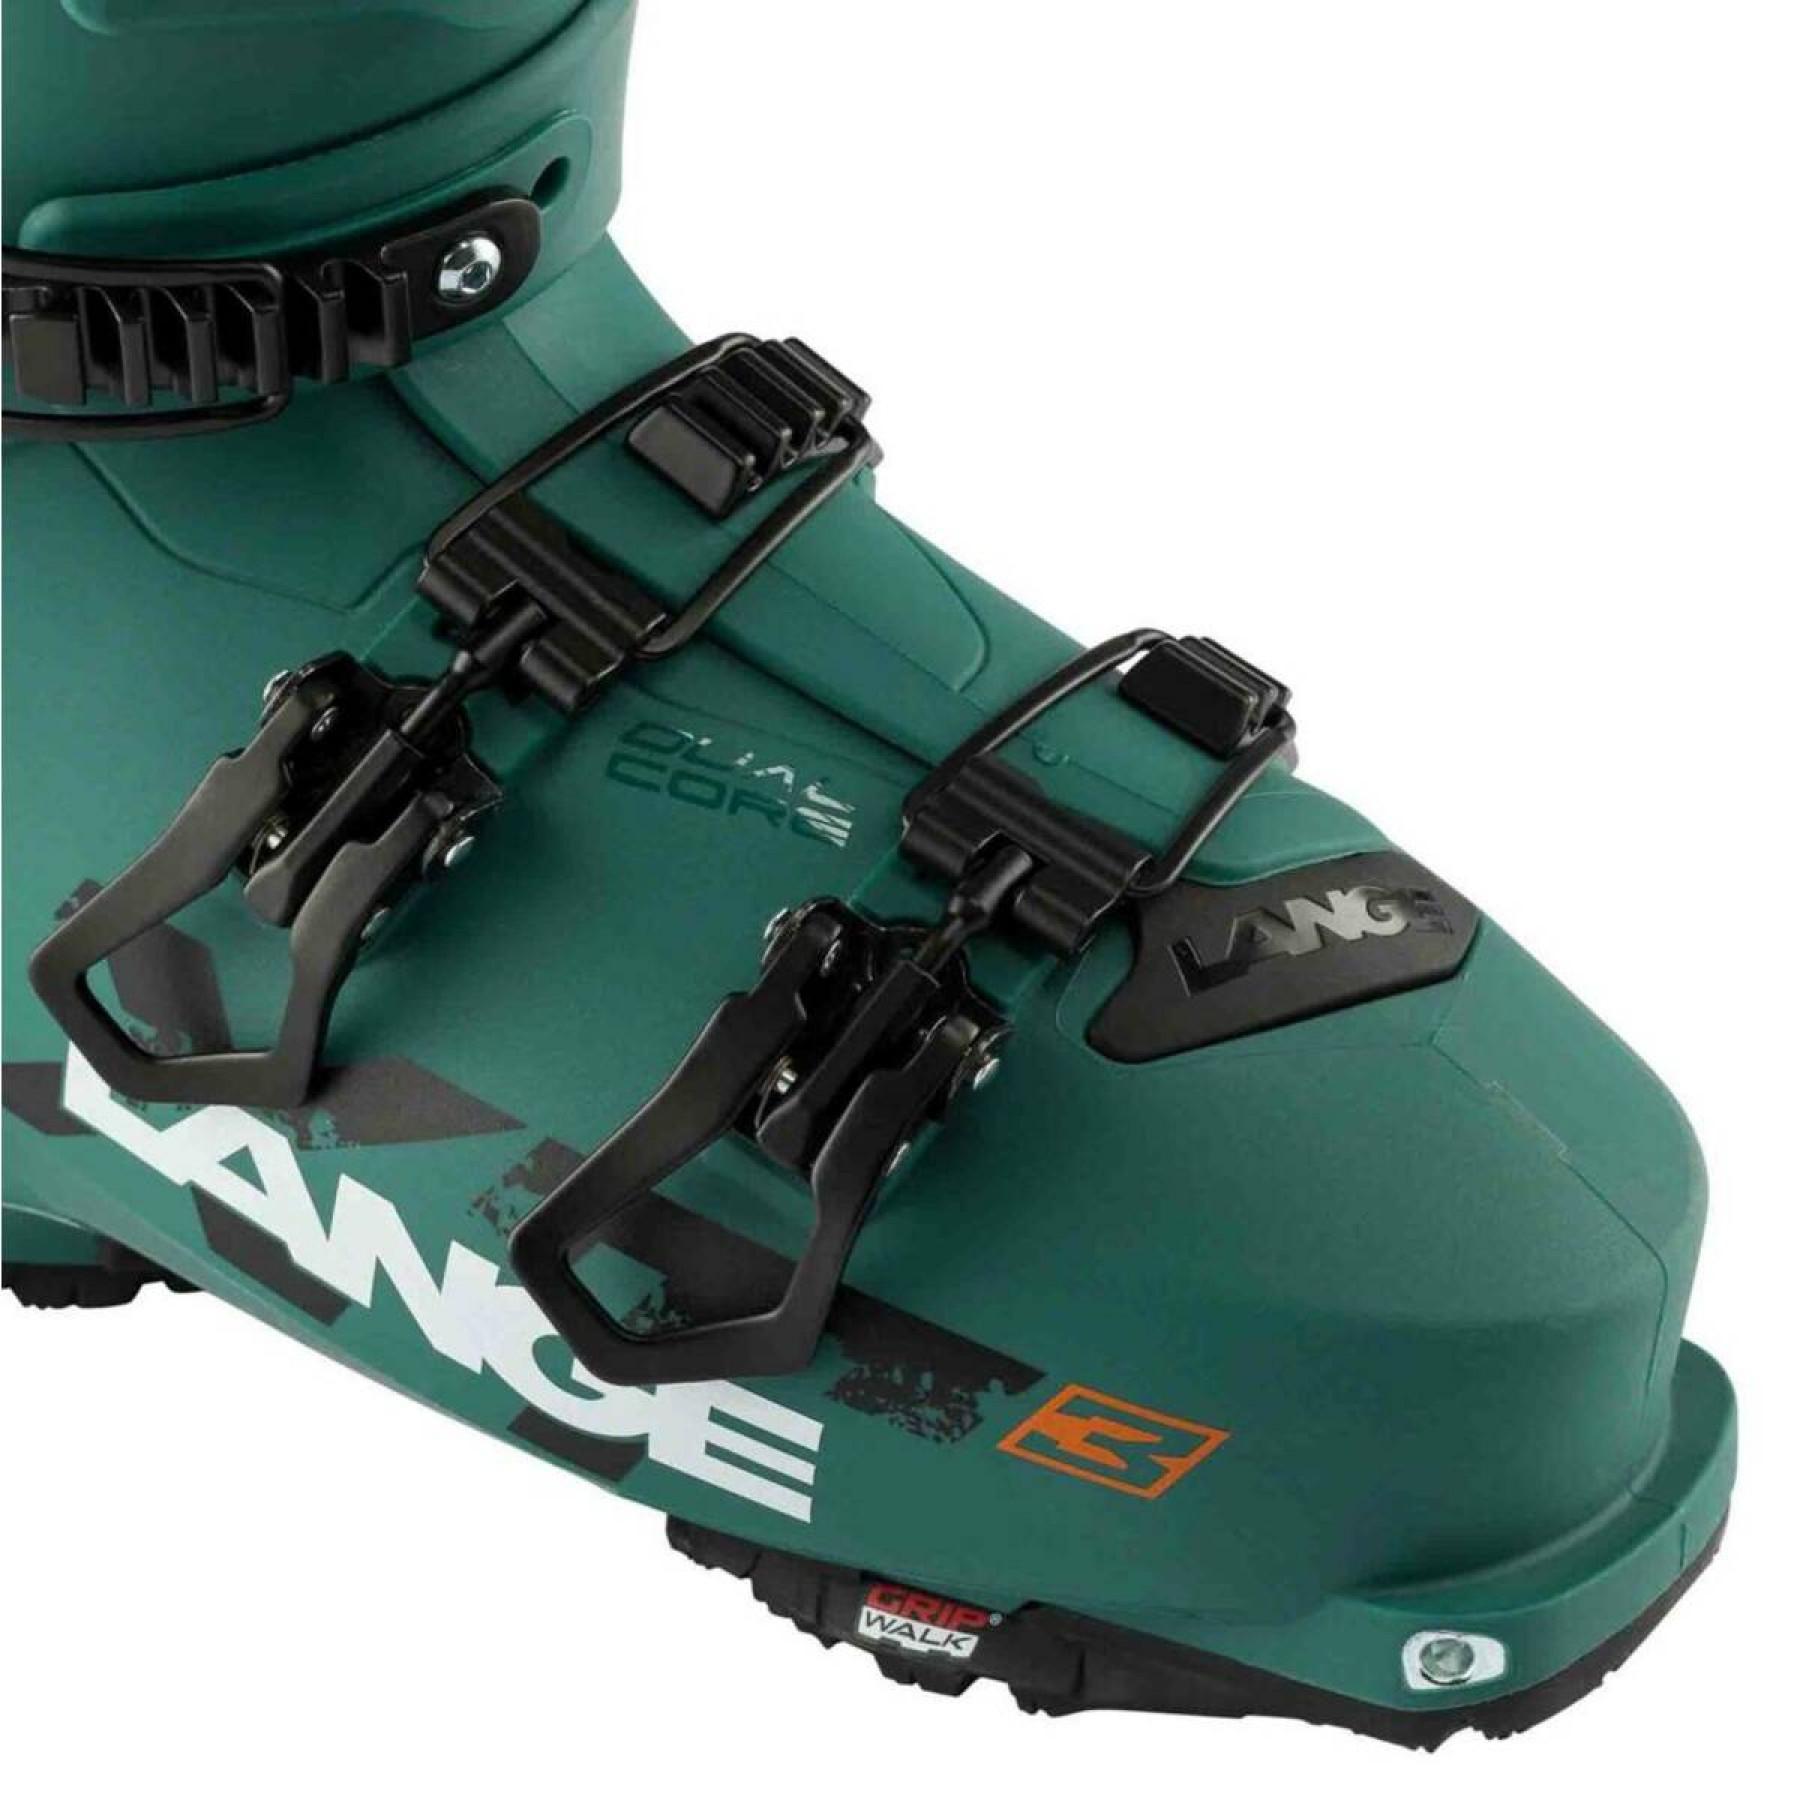 Chaussures de ski Lange xt3 120 gw